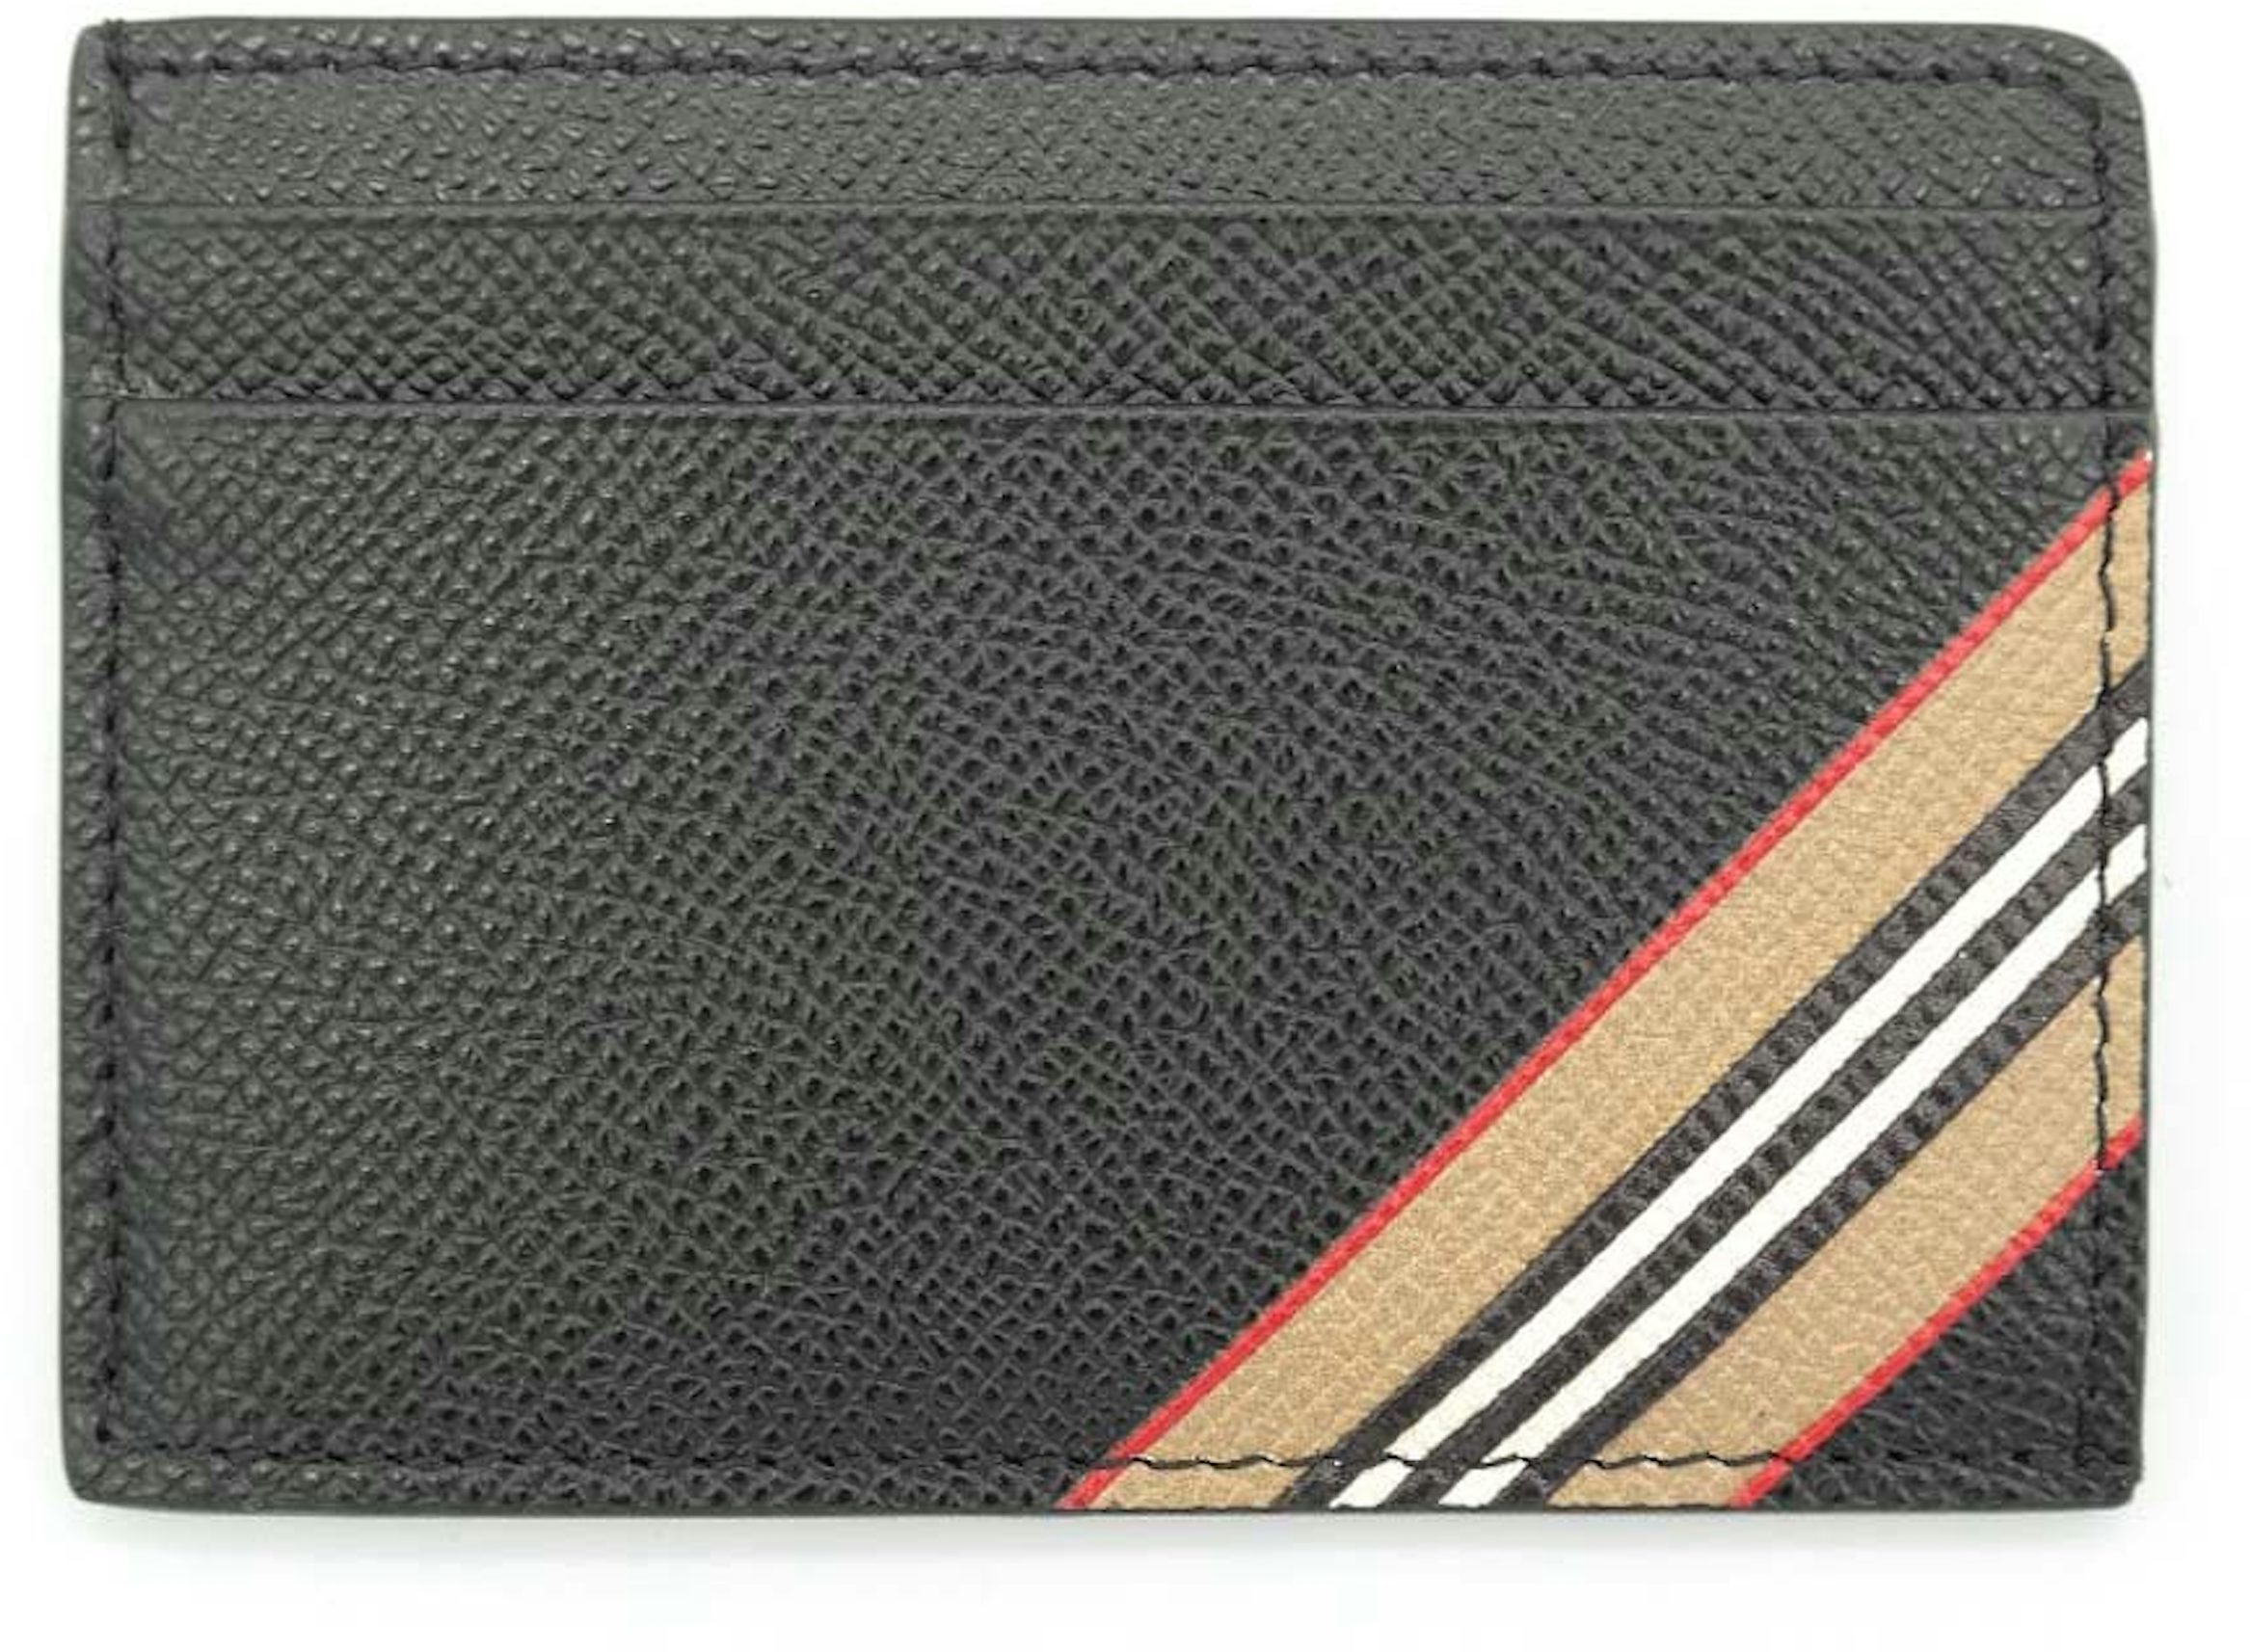 Louis Vuitton Monogram With Brand Name On Stripe Black Carpet